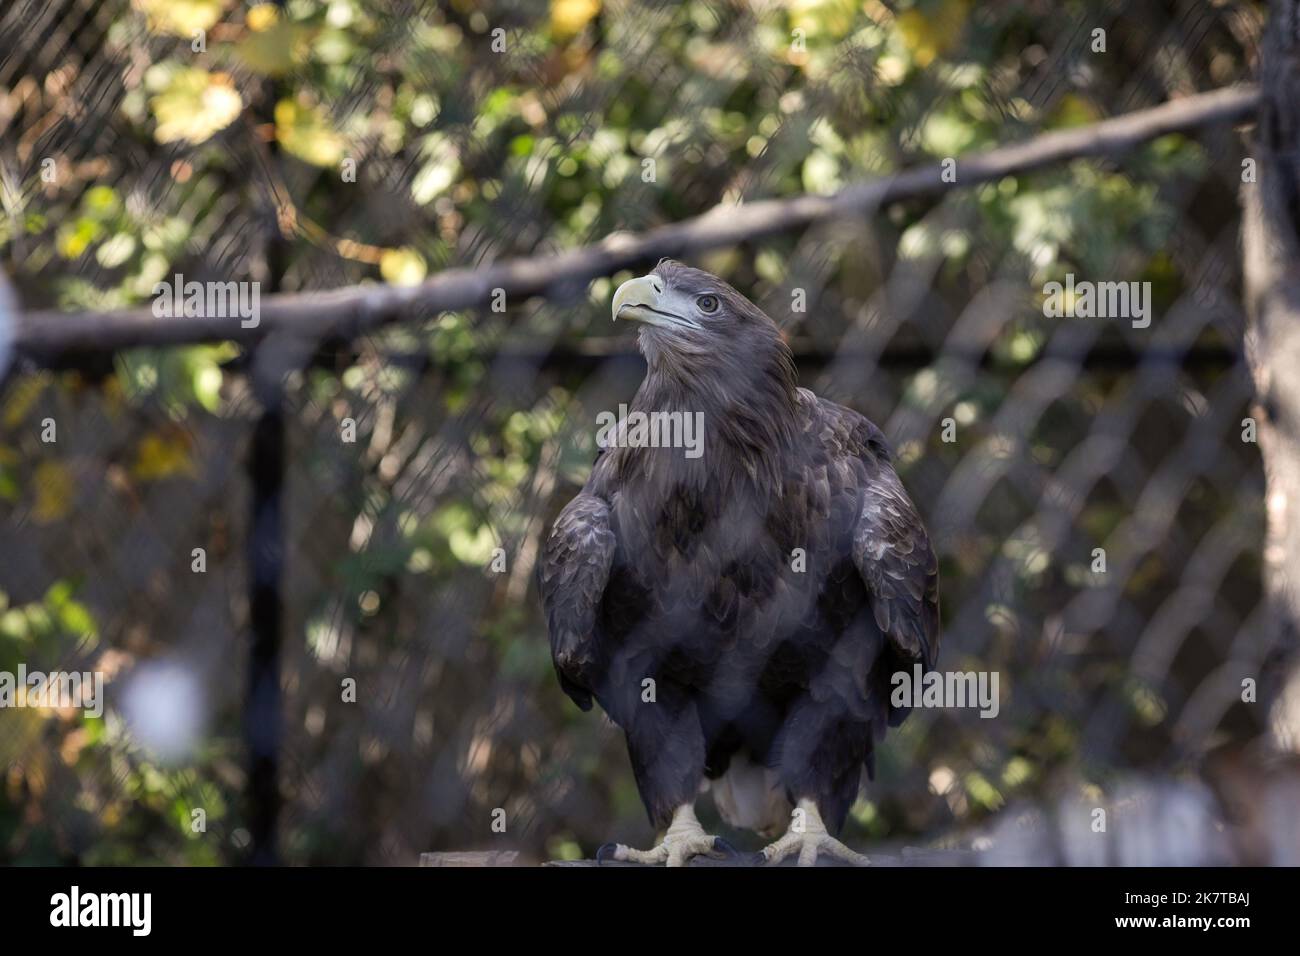 White-tailed eagle (Haliaeetus albicilla) in an eastern European zoo. Caged wildlife. Animal abuse. Stock Photo